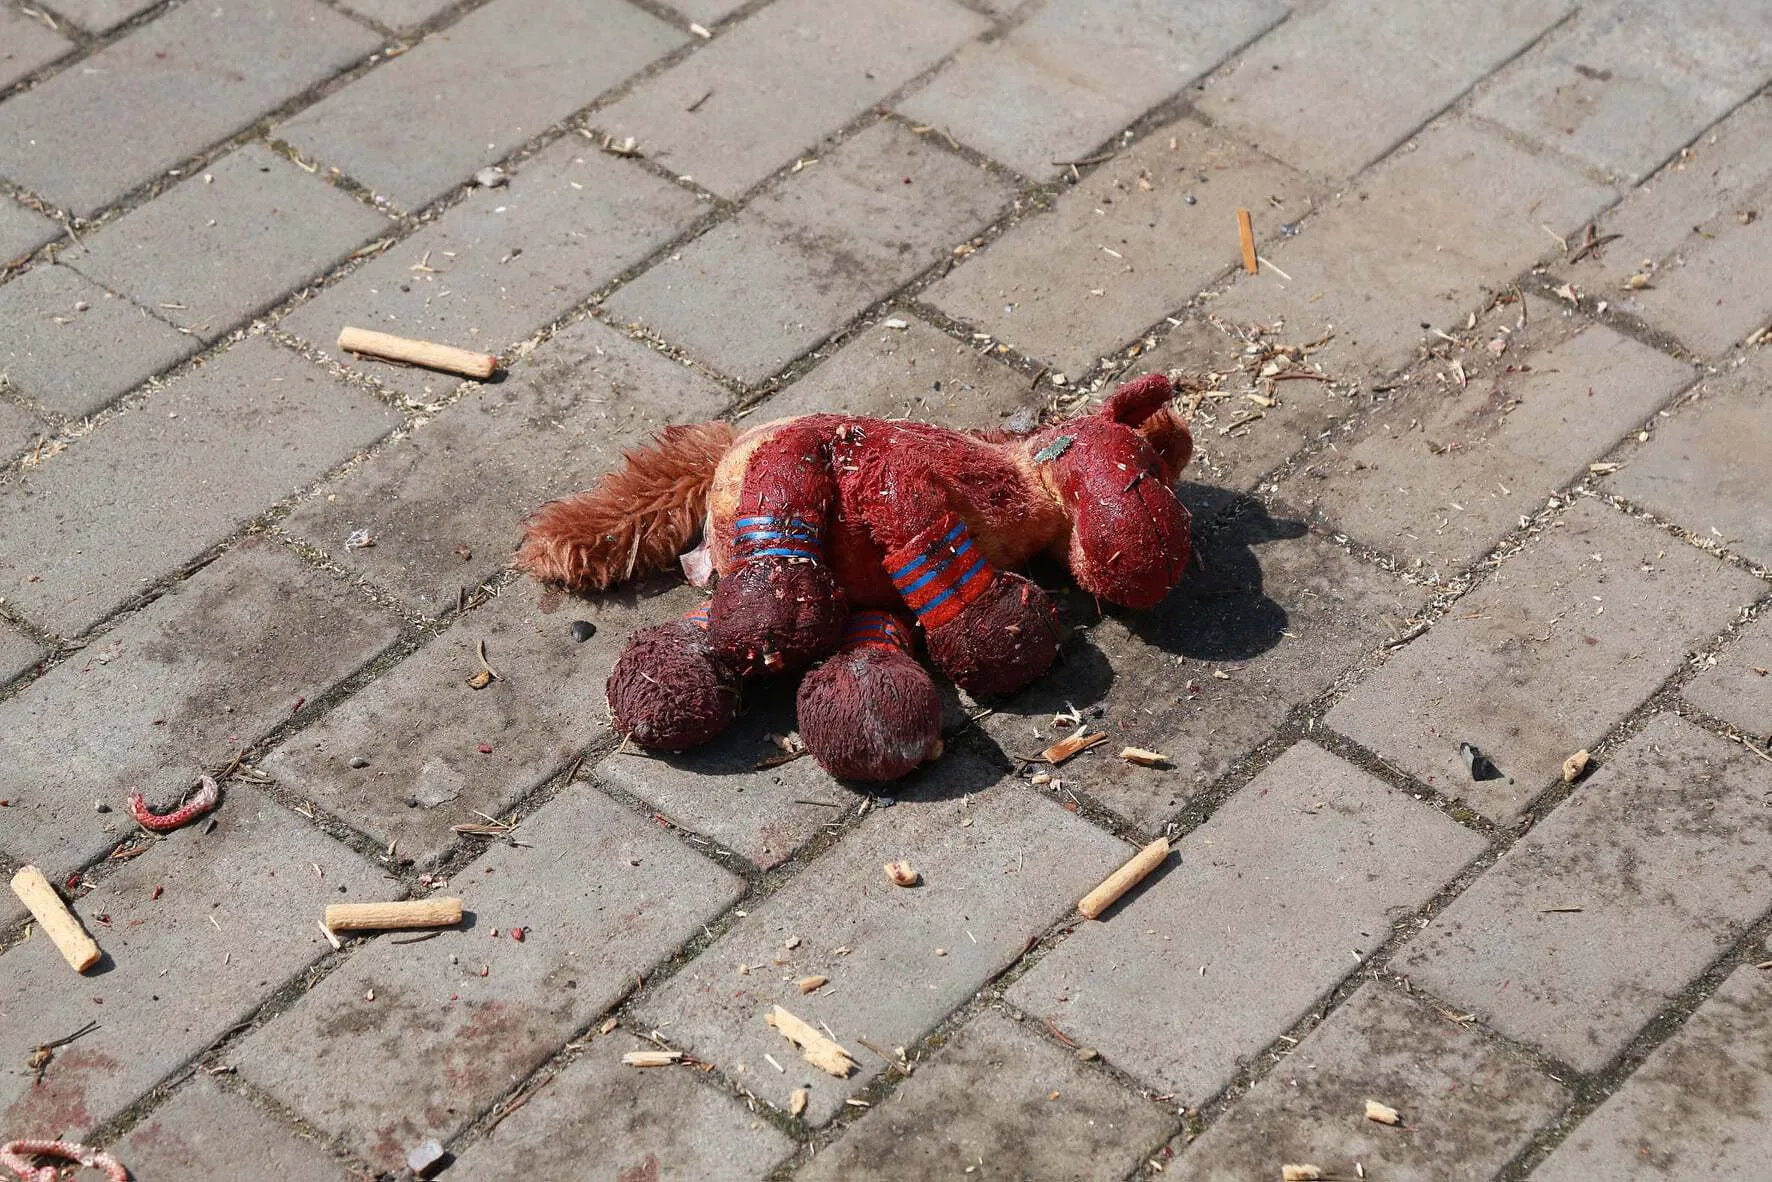 Іграшка з вокзалу Краматорська, атакованого Росією. 8 квітня 2022 року. Закривавлену іграшку передали до ООН. © Роман Кулик / Facebook